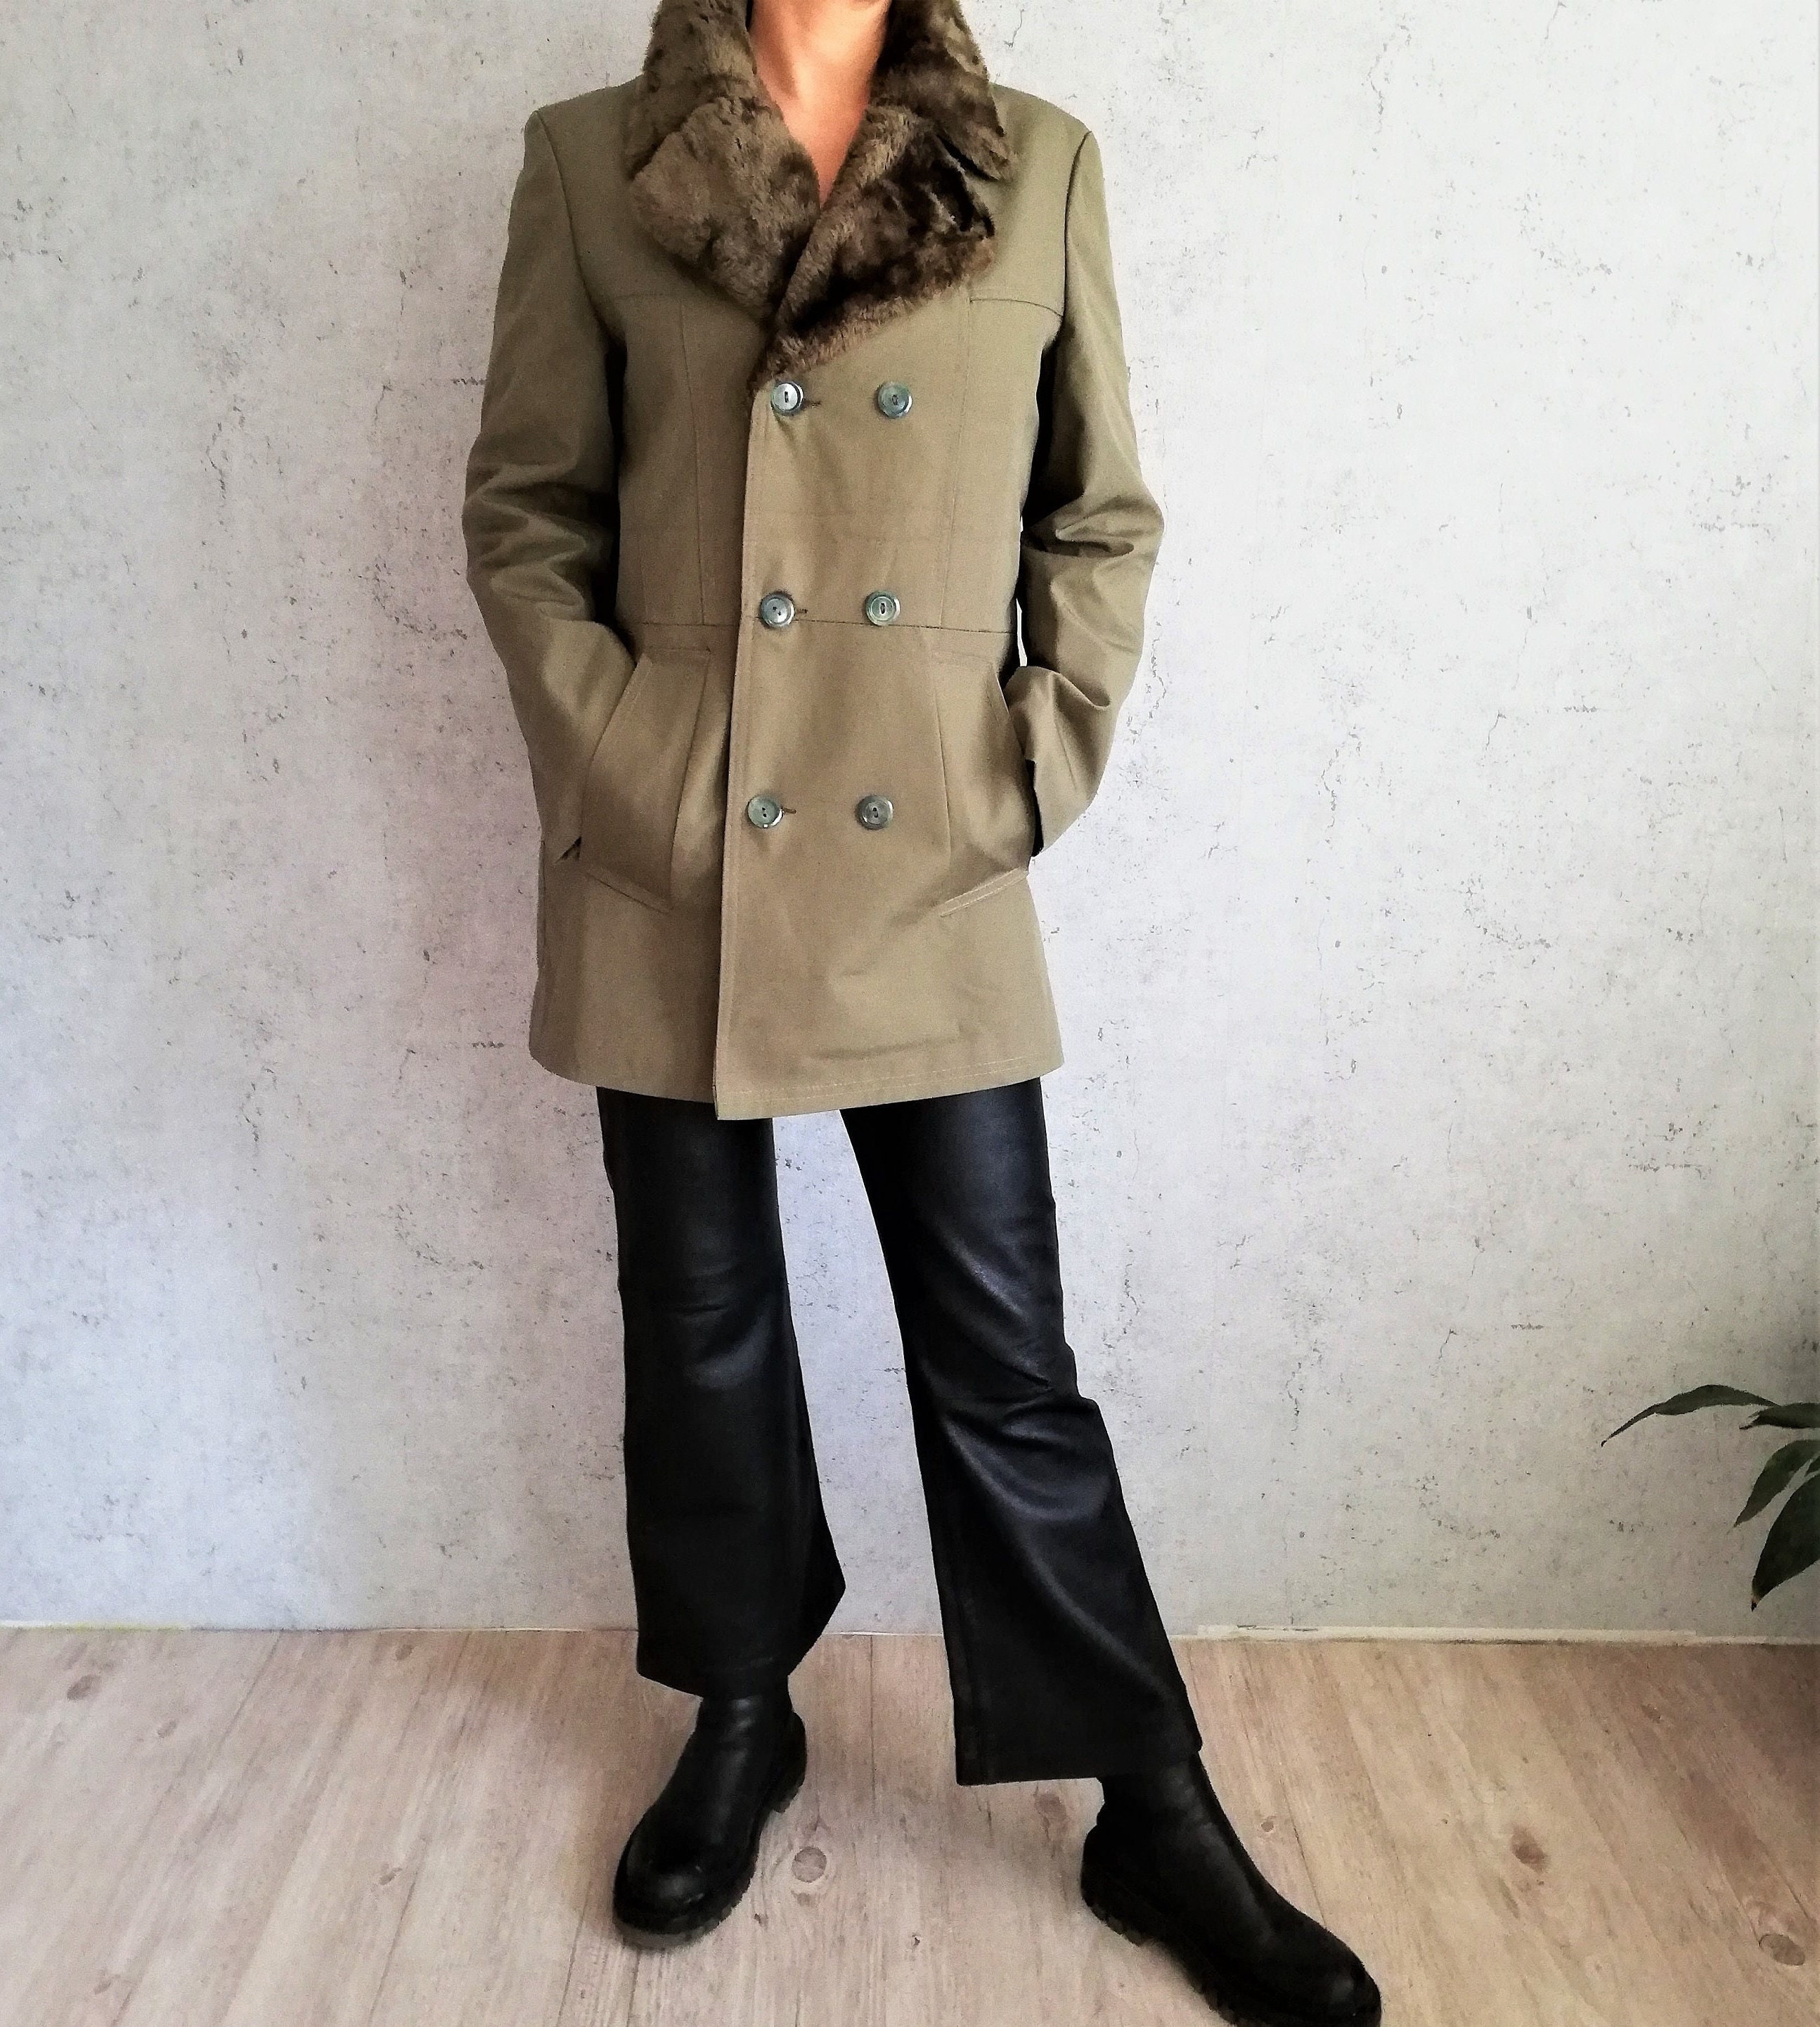 Mens Big mink Fur collar Fur Jacket Winter long Coat thicken Overcoat Parka  punk